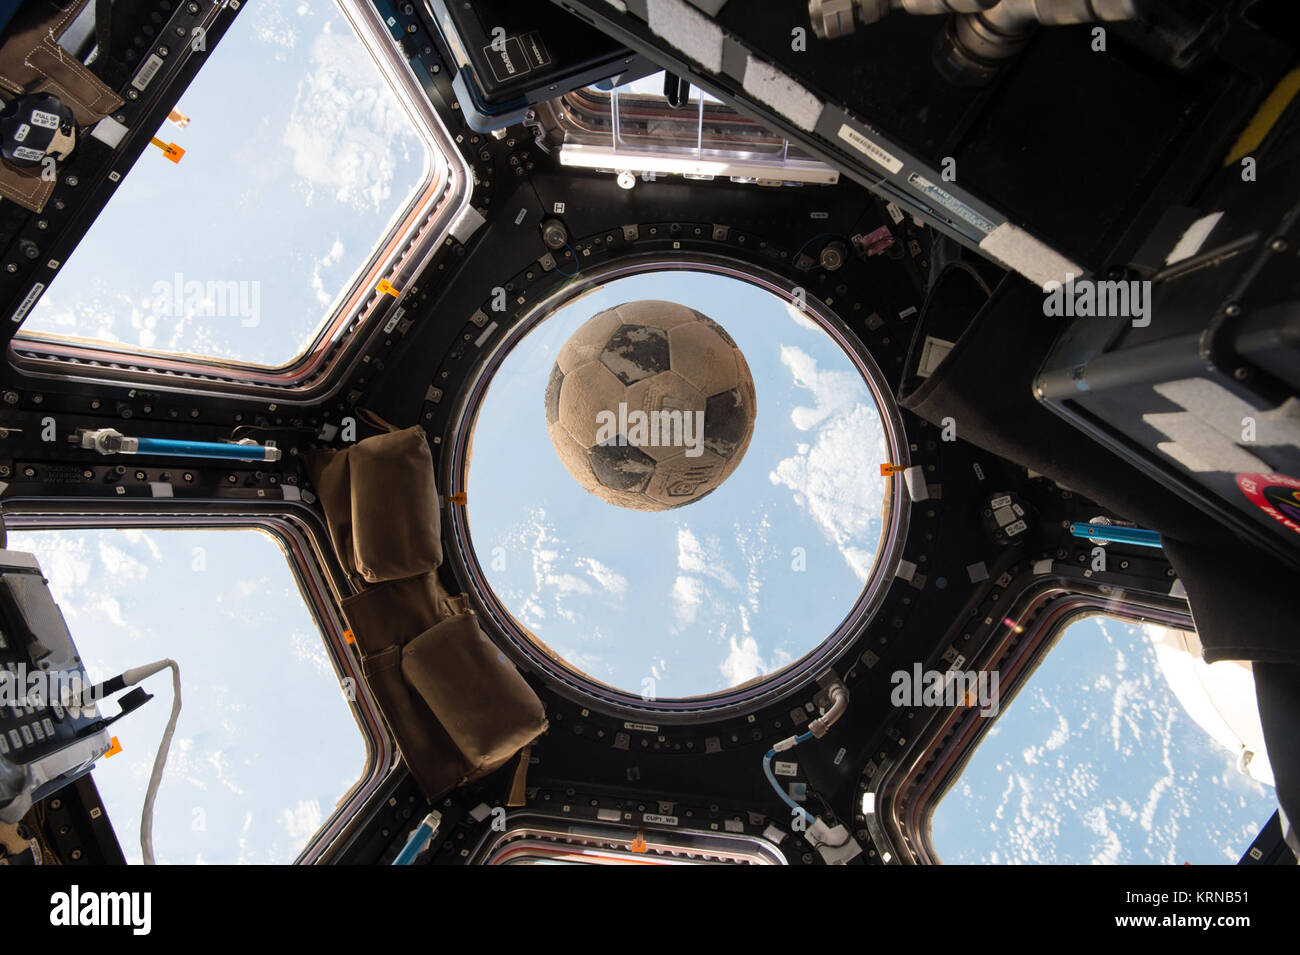 ISS-50 ballon de soccer à l'avance de souvenir Challenger Banque D'Images